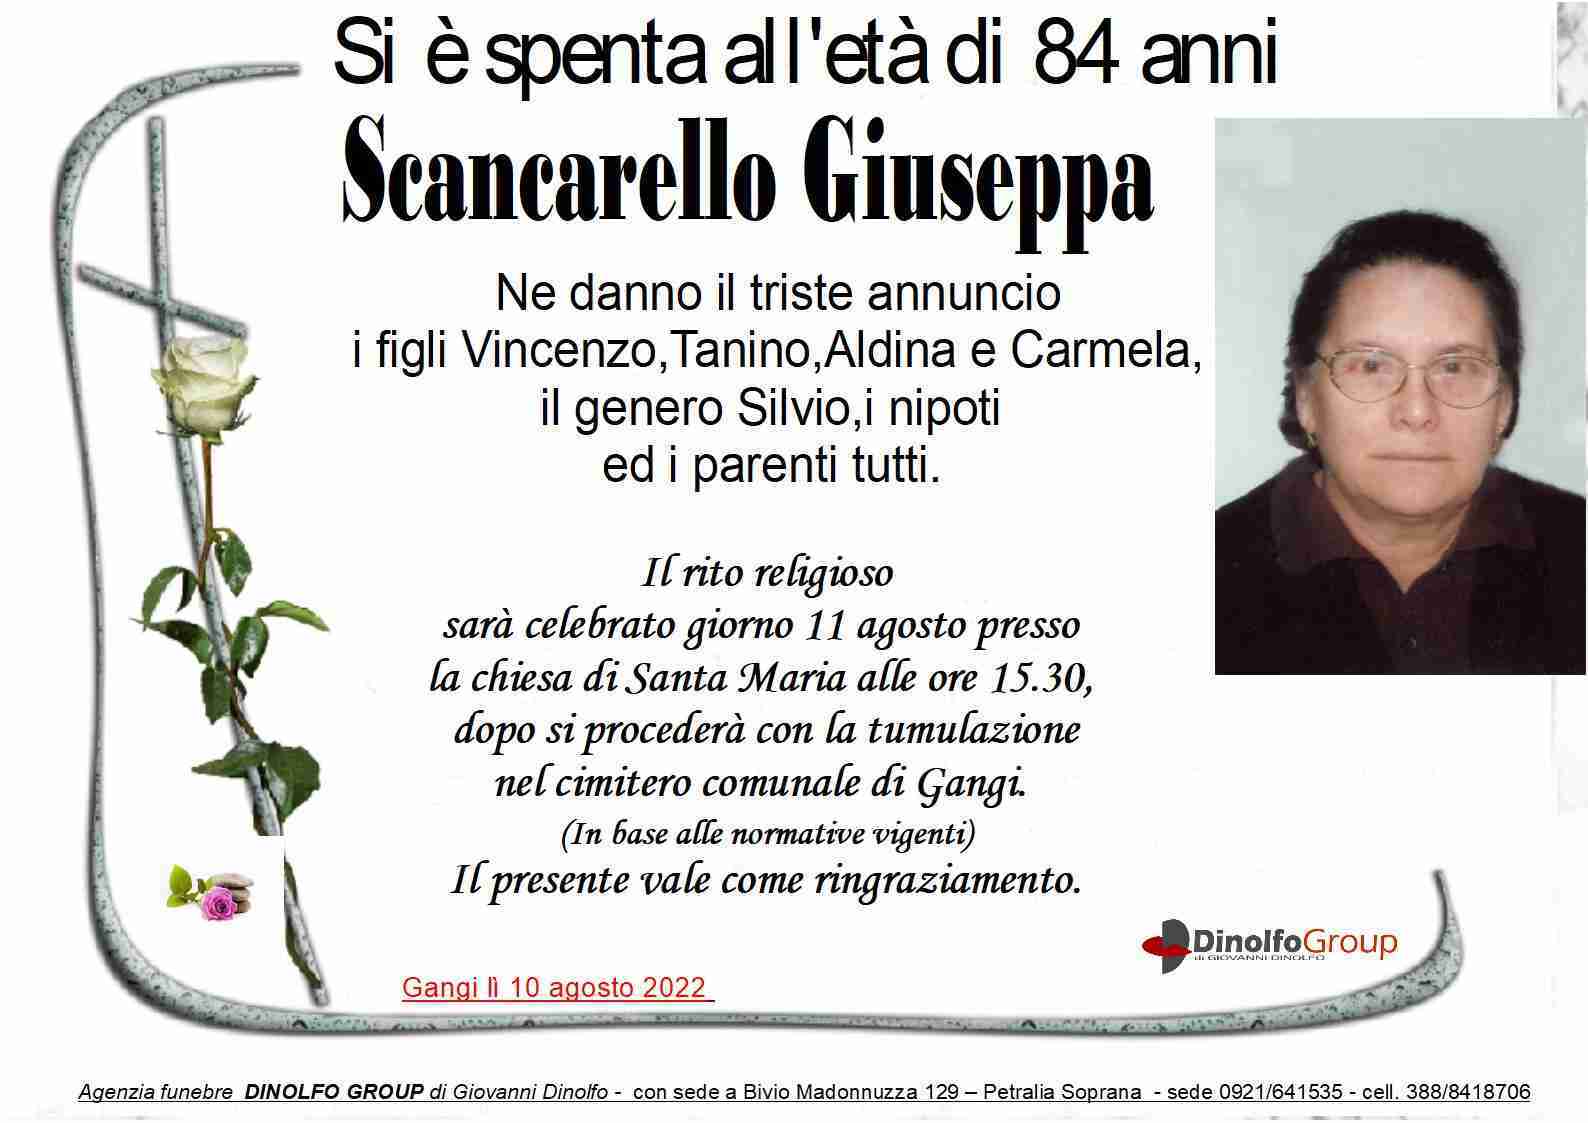 Giuseppa Scancarello